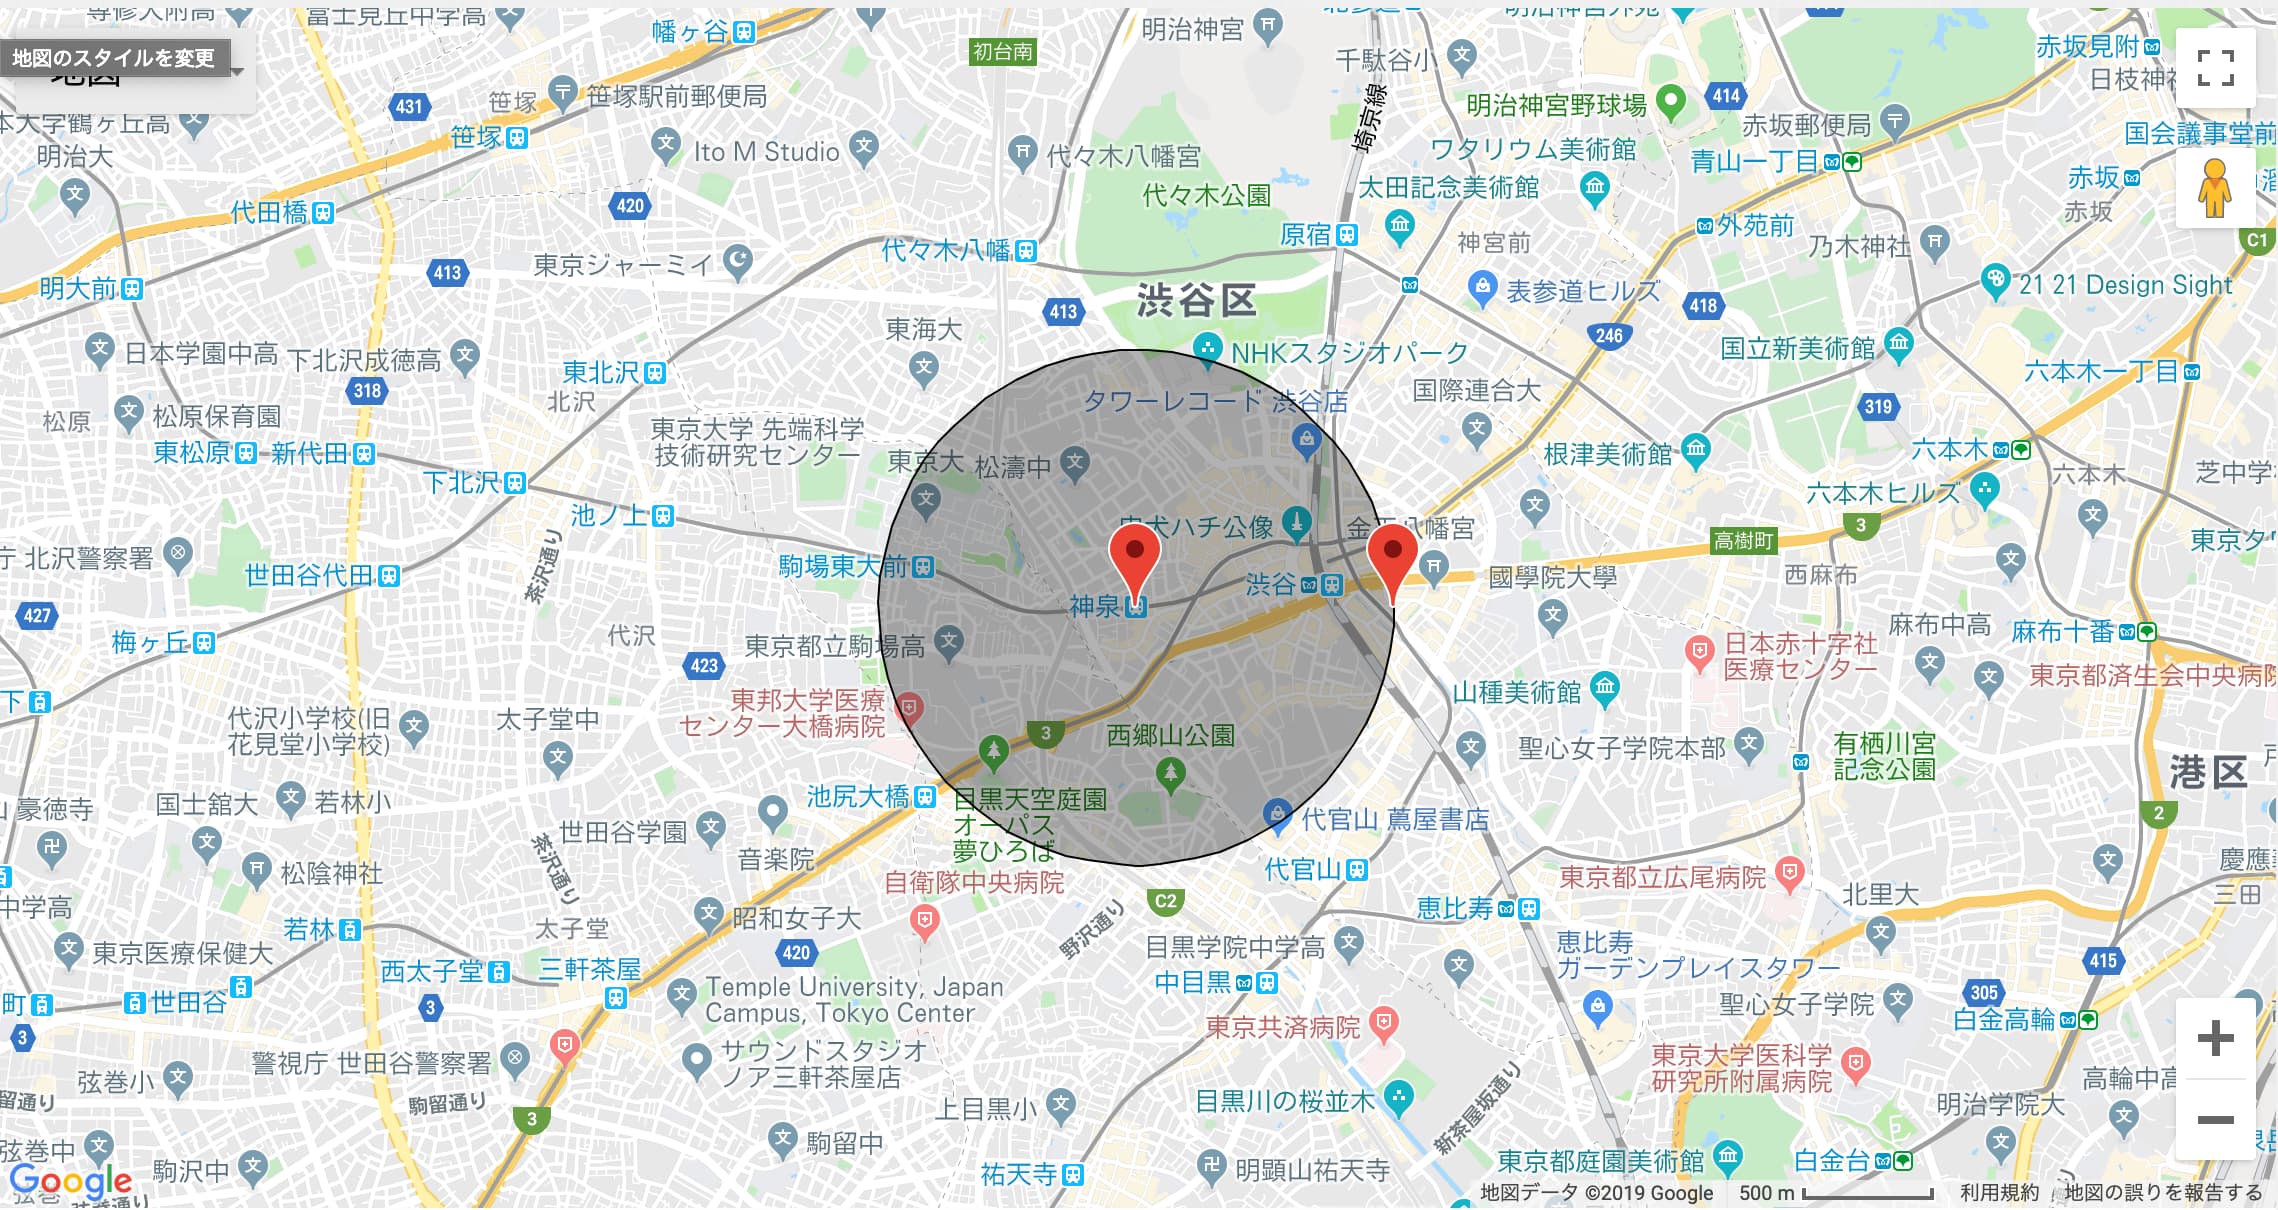 神泉駅周辺のシェアハウスの賃料相場は？もっと詳細を知りたい。シェアハウスの管理運営民泊・ホテルの管理運営